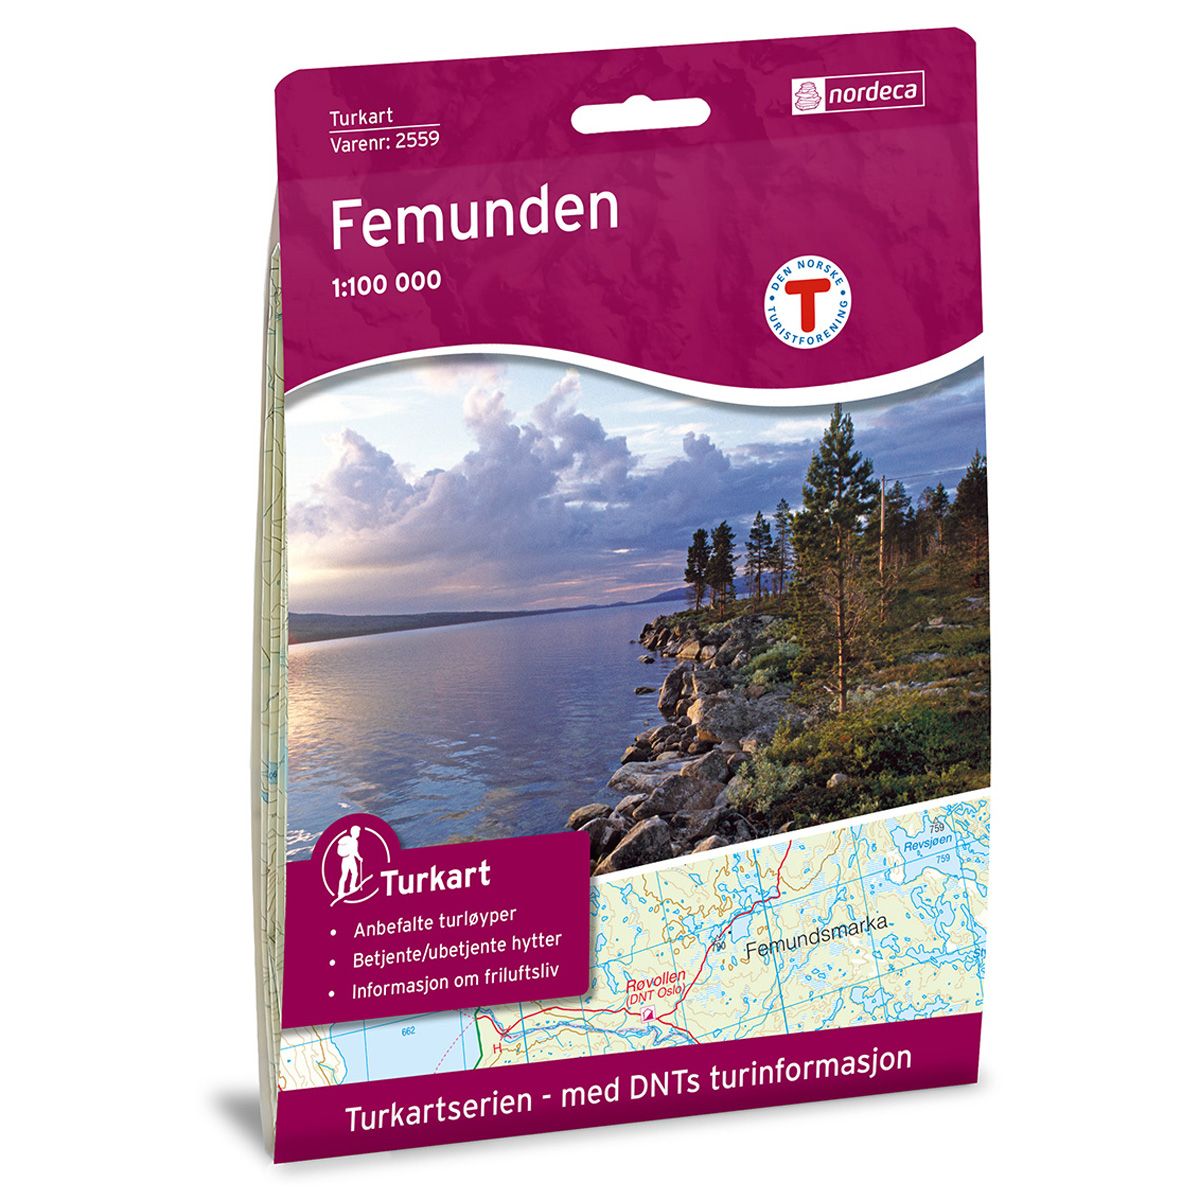 Turkart, Femunden